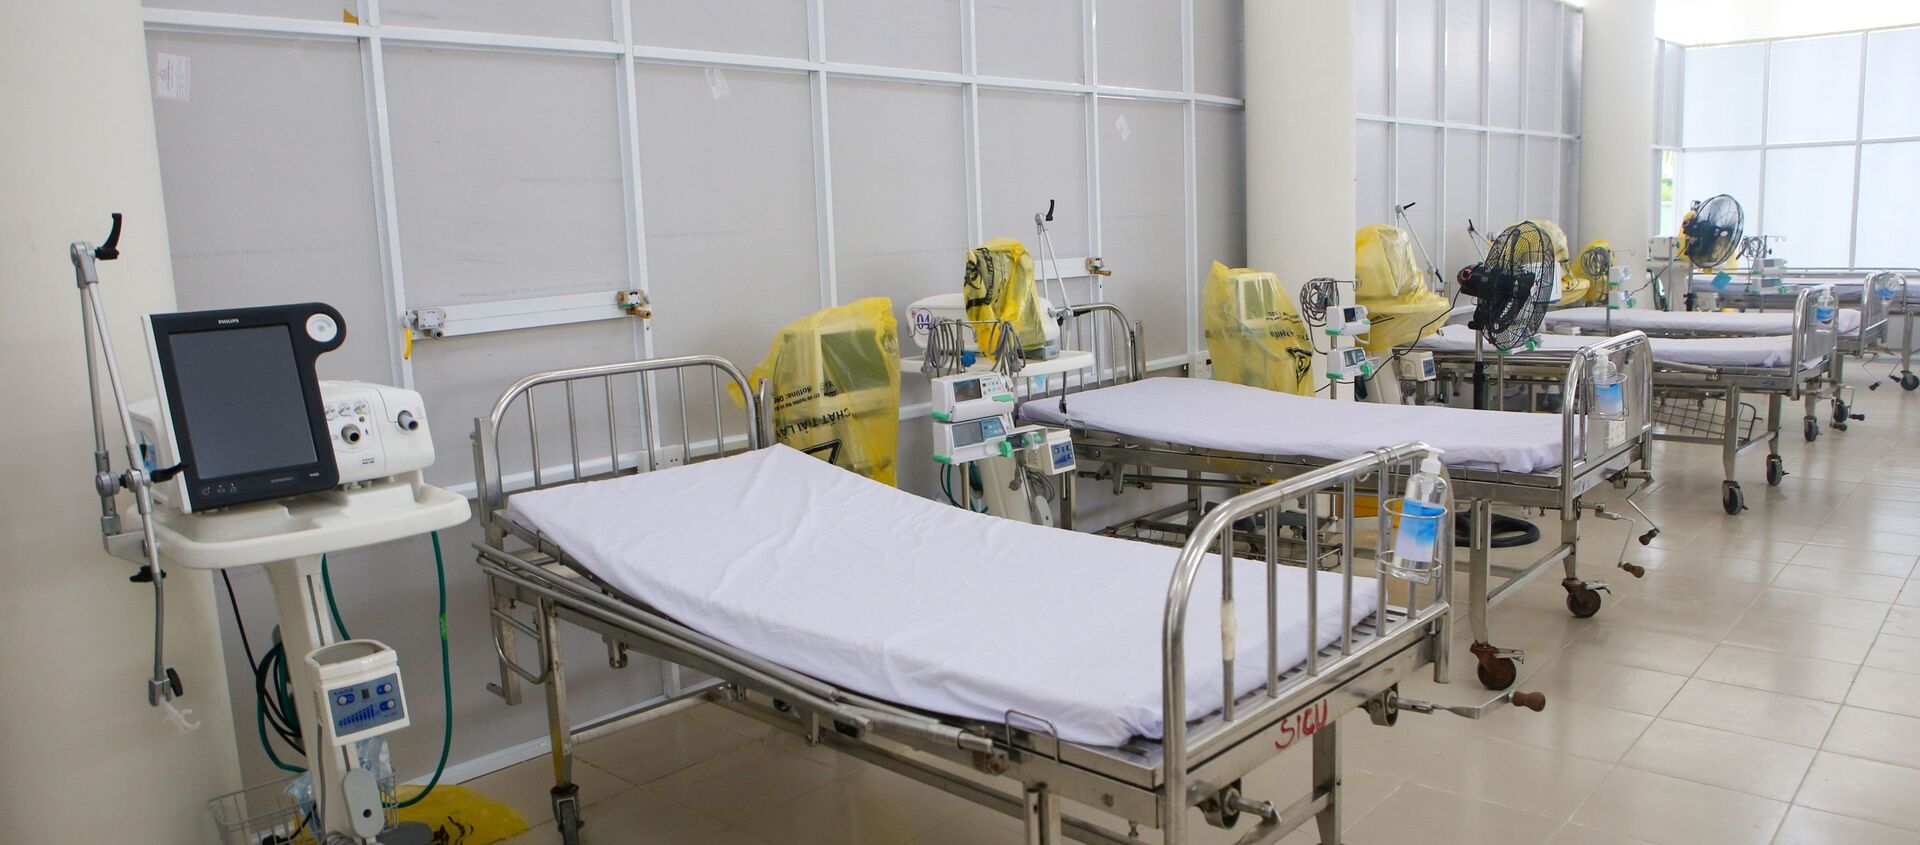 Khu Hồi sức cấp cứu tại bệnh viện dã chiến với các trang bị máy mọc hiện đại - Sputnik Việt Nam, 1920, 17.08.2021